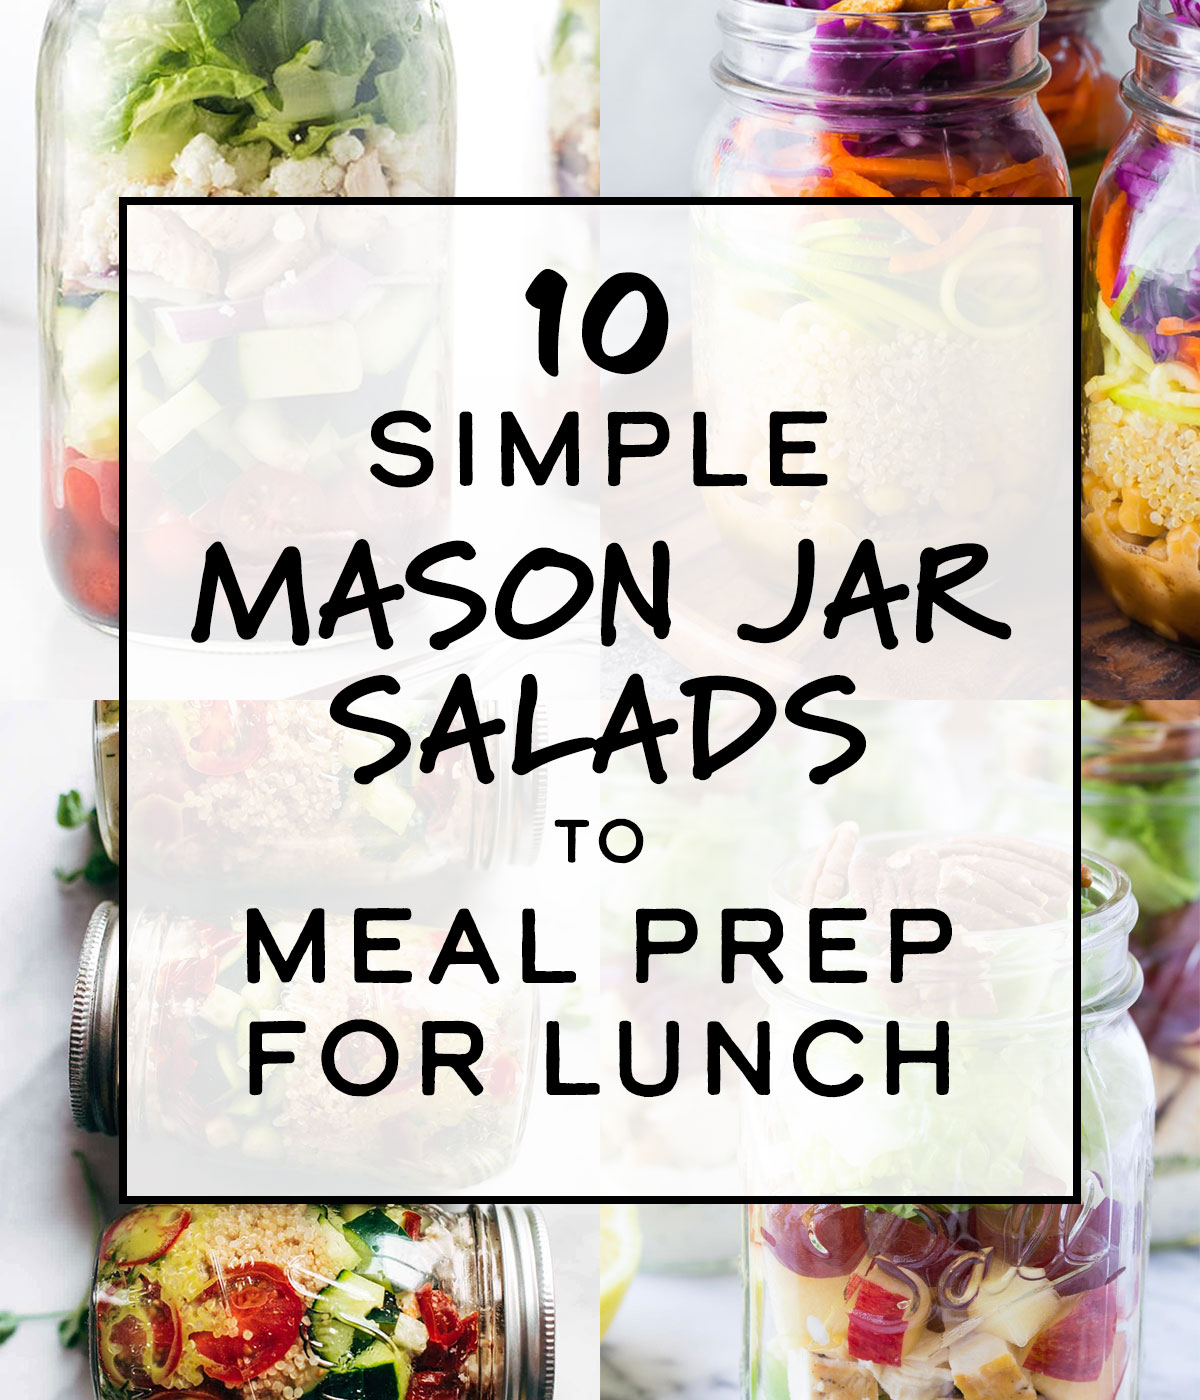 https://cdn5.projectmealplan.com/wp-content/uploads/2019/04/simple-mason-jar-salads-round-up.jpg